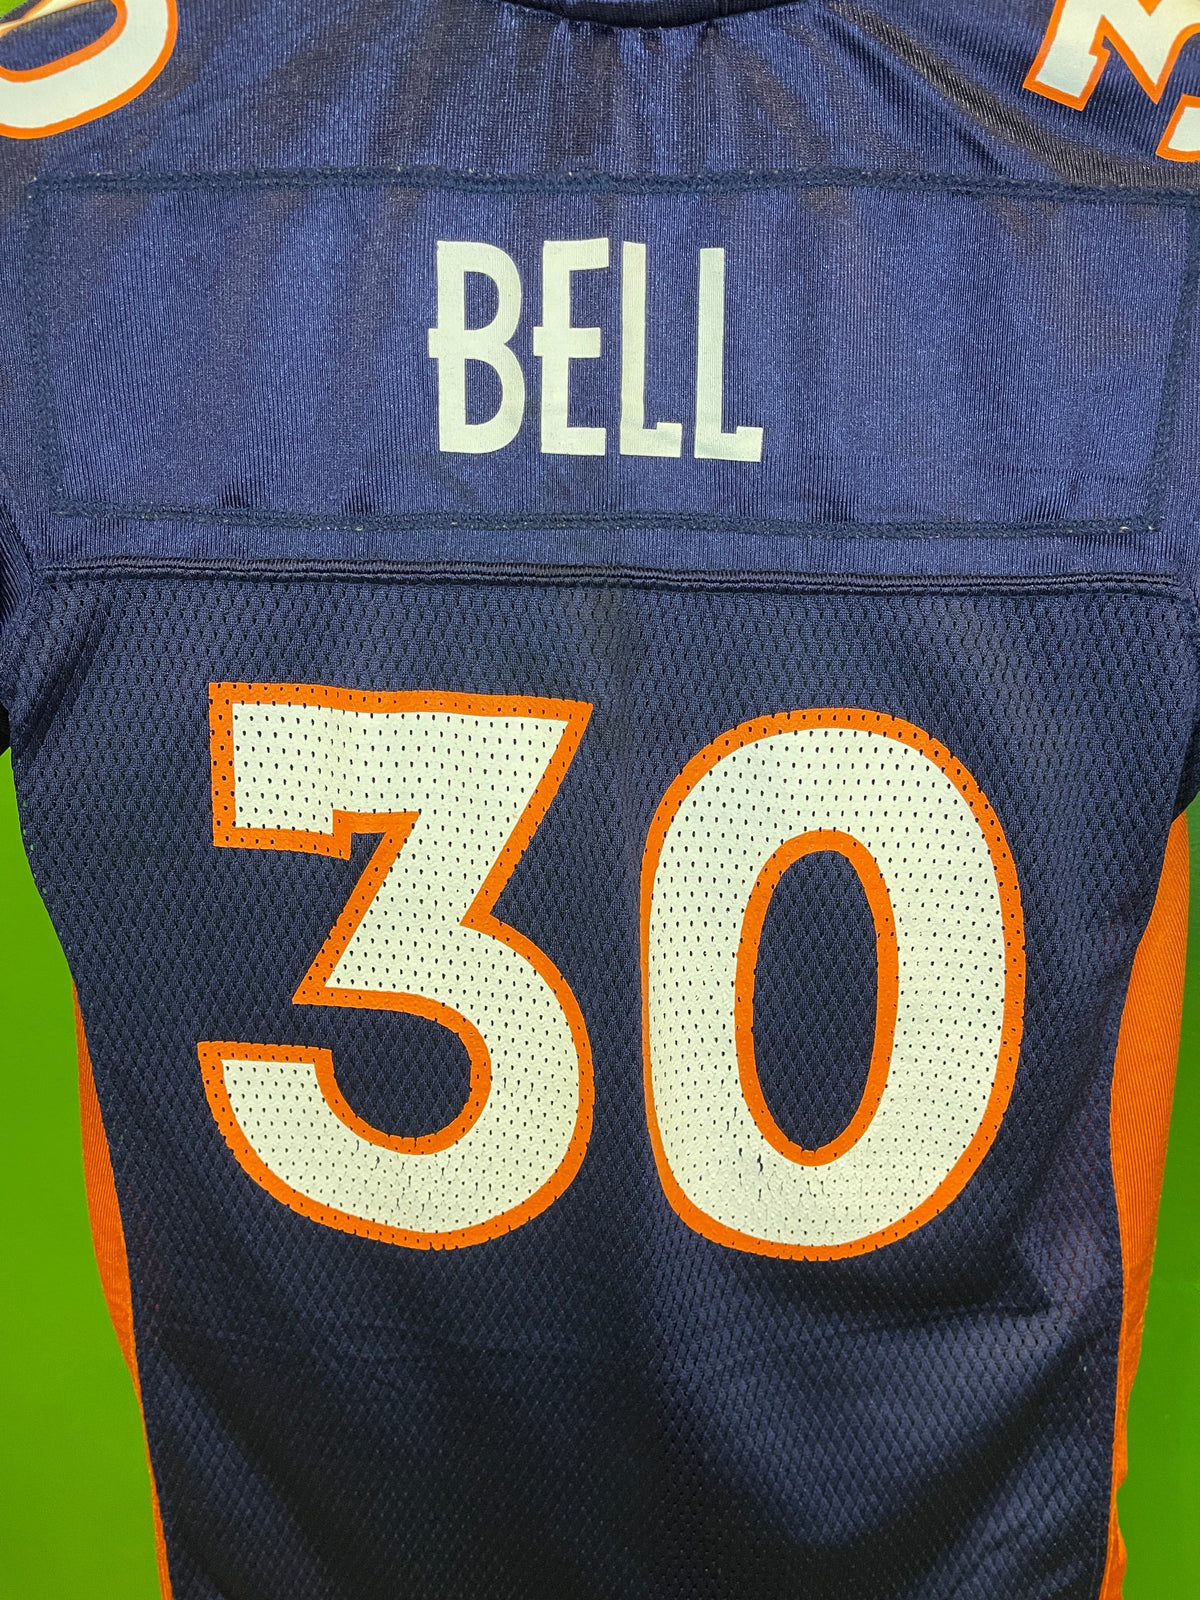 NFL Denver Broncos Mike Bell #30 Blue Jersey Youth Medium 10-12